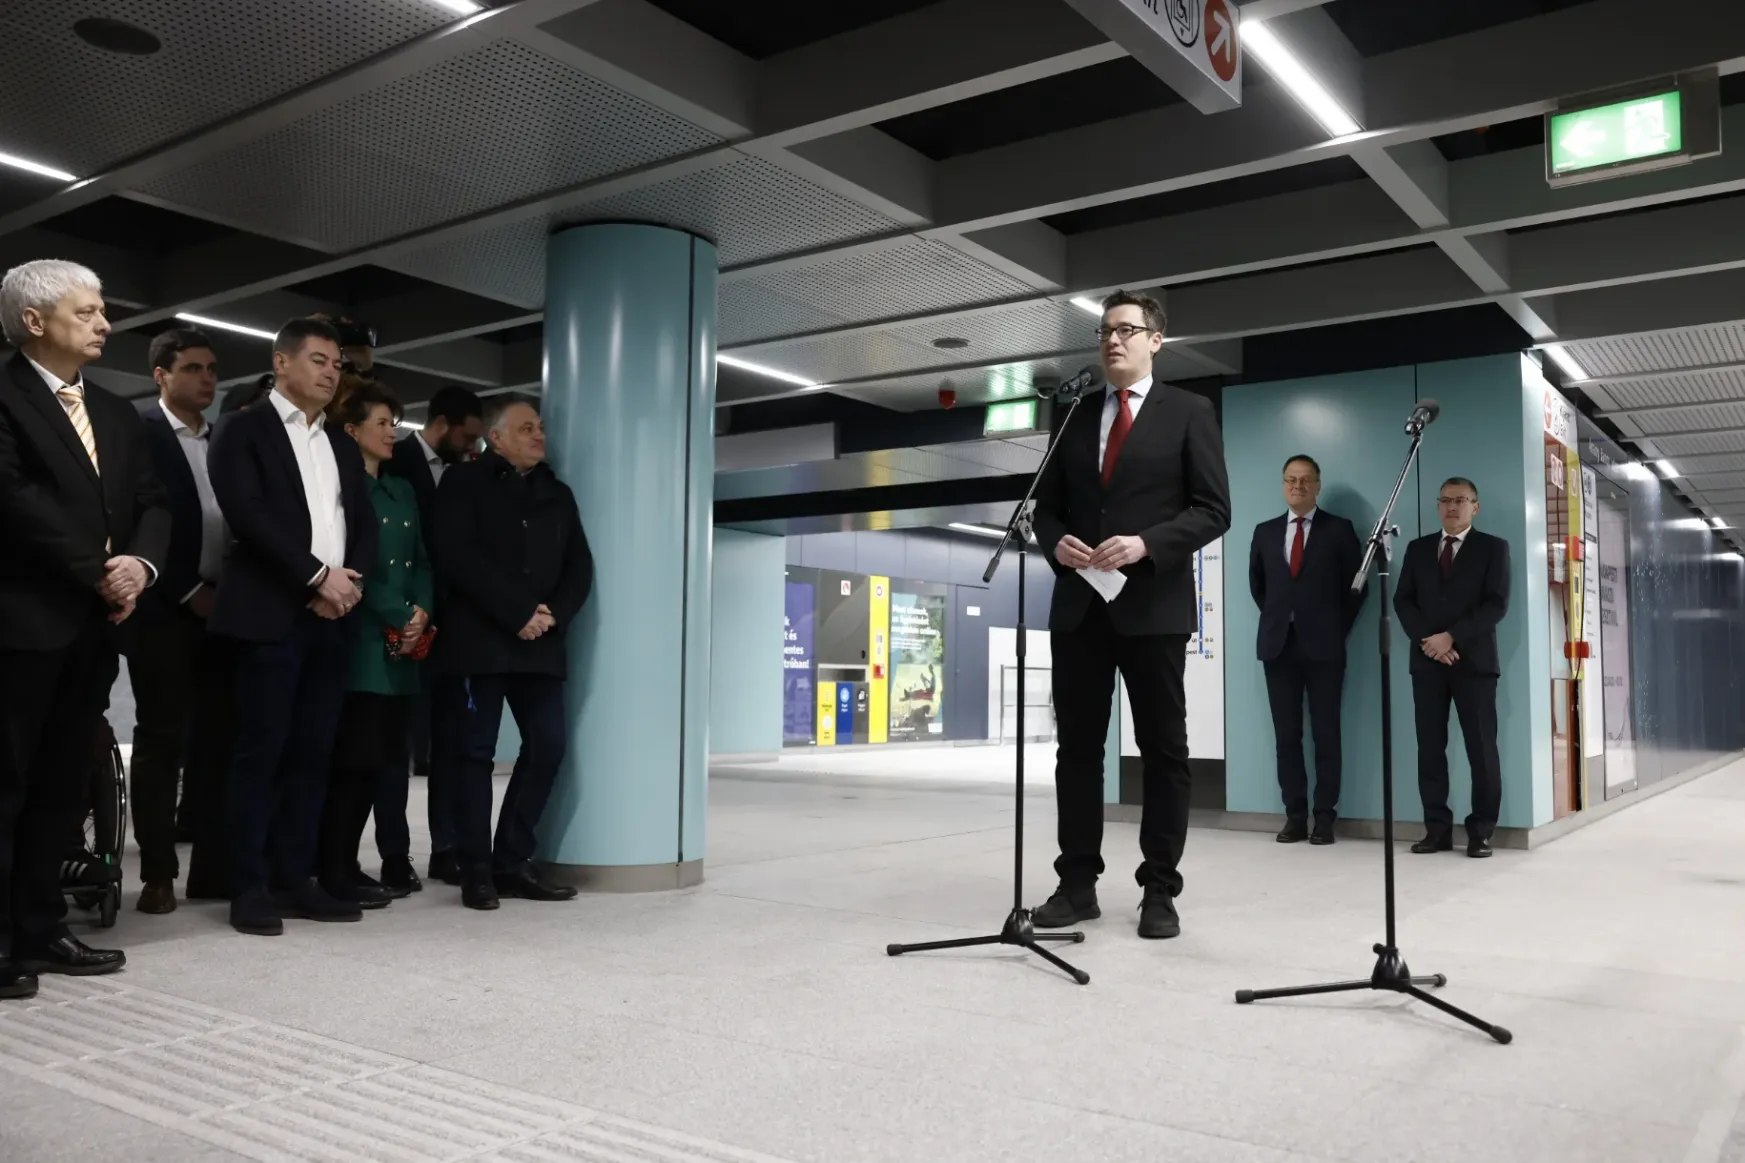 Karácsony: A 3-as metró nem budapesti, hanem nemzeti ügy